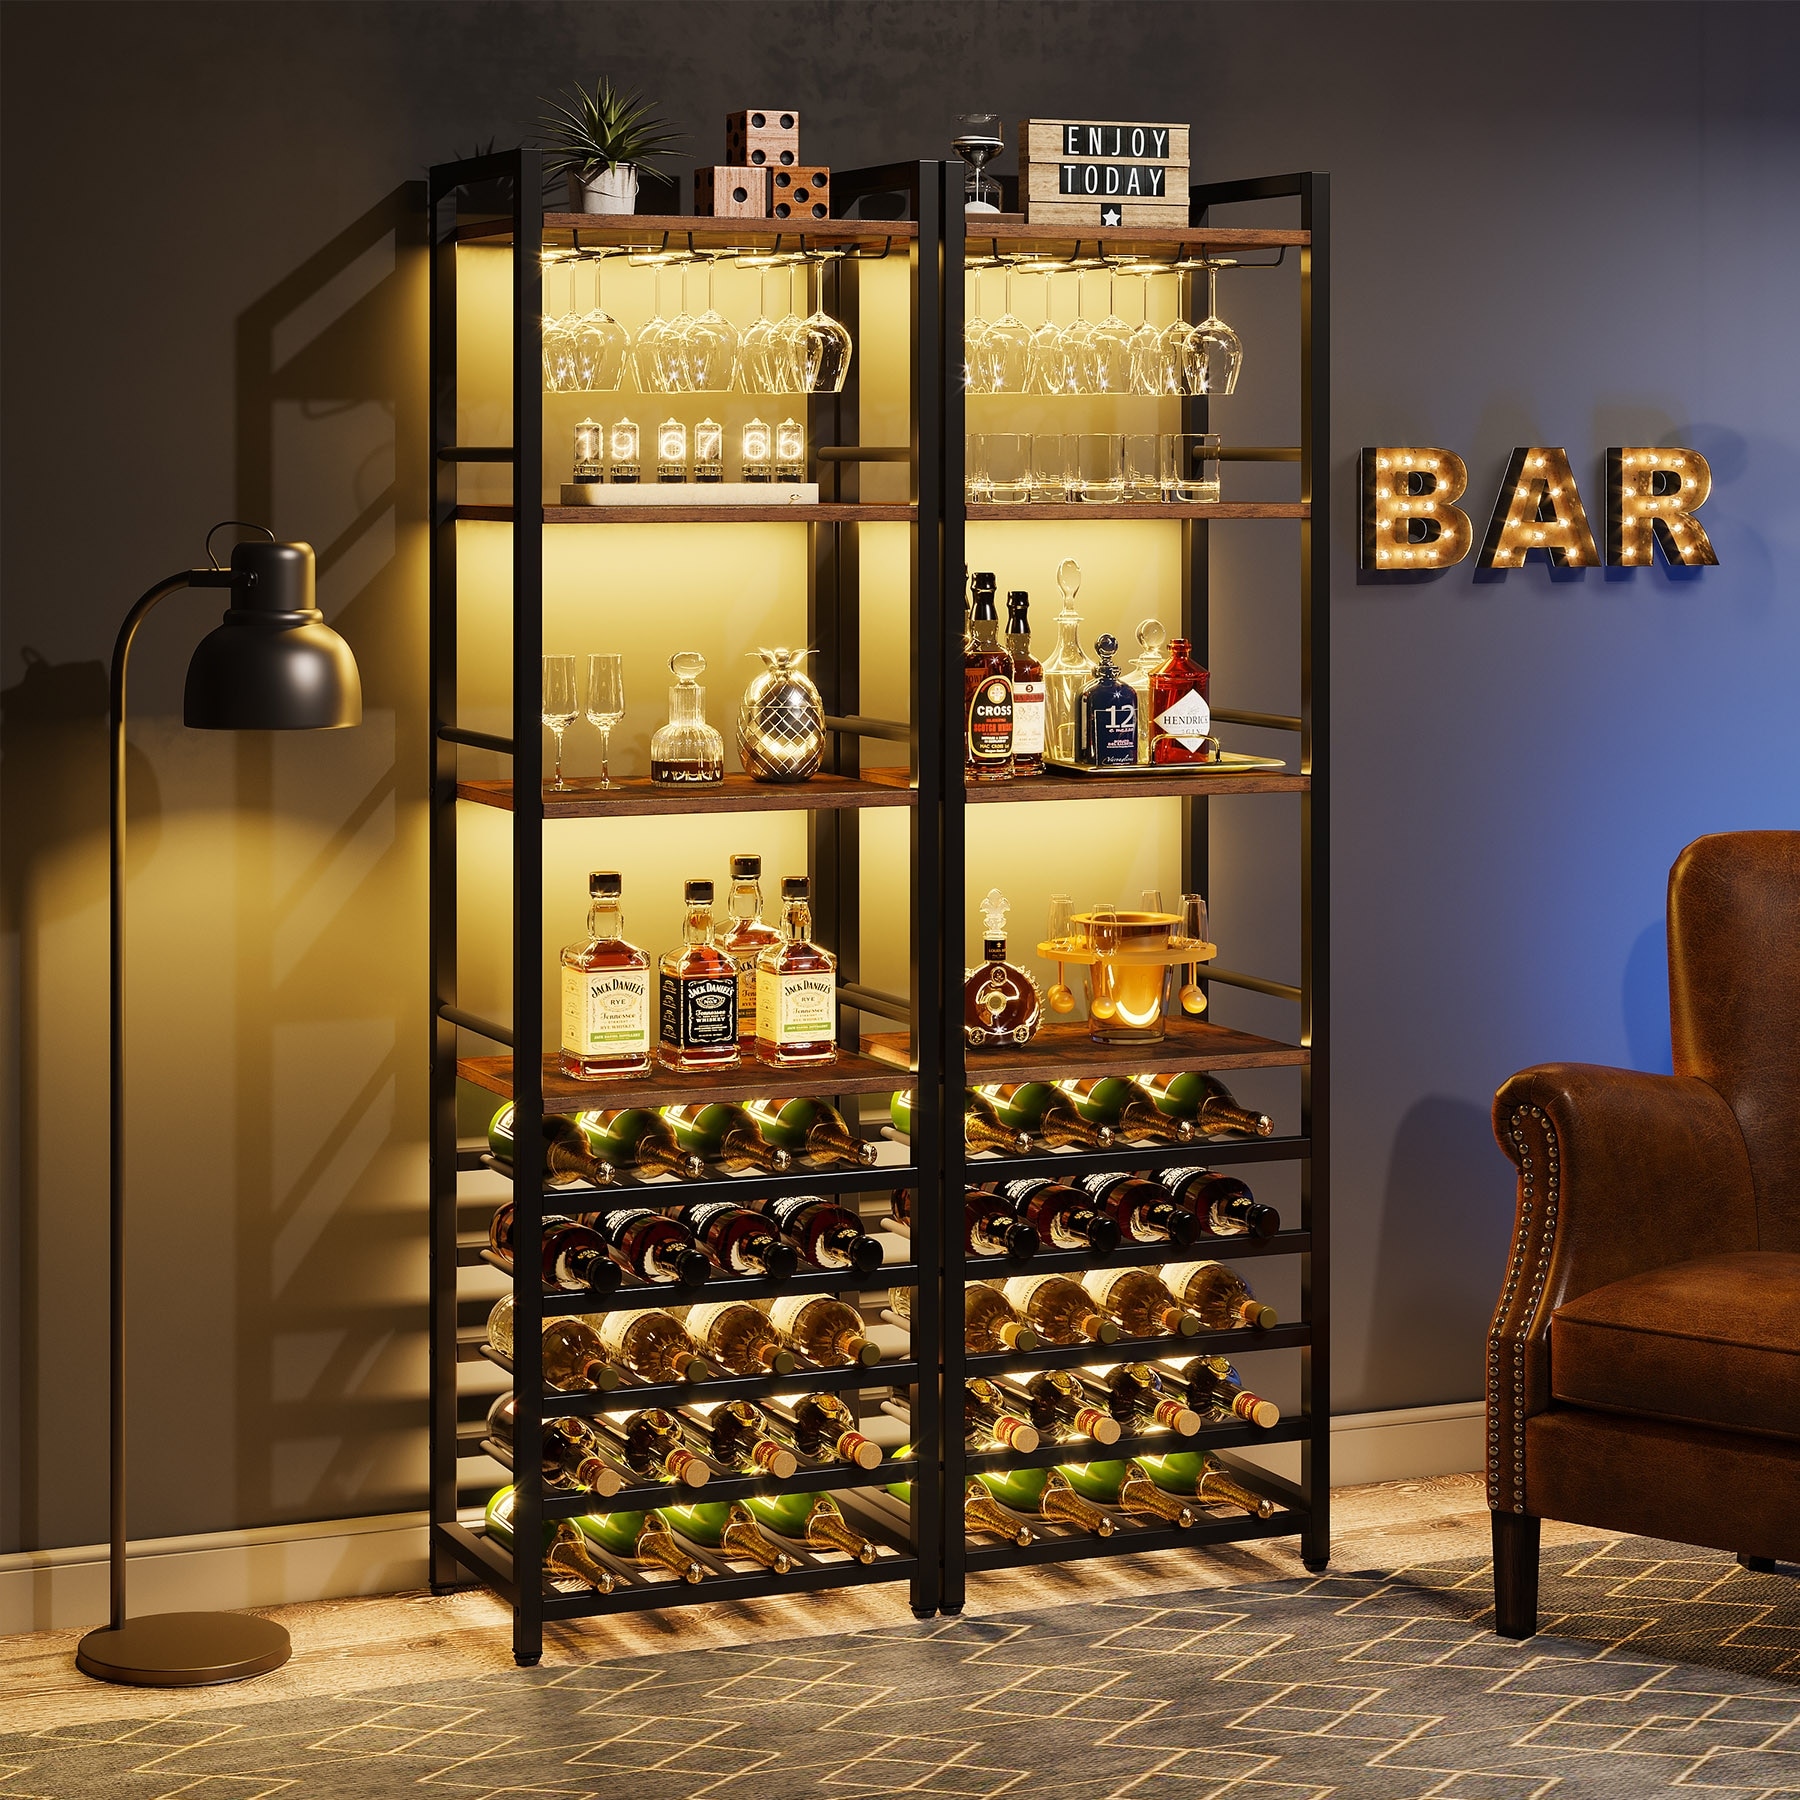 150 Dry Bar Basement ideas  bars for home, mini bar, bar